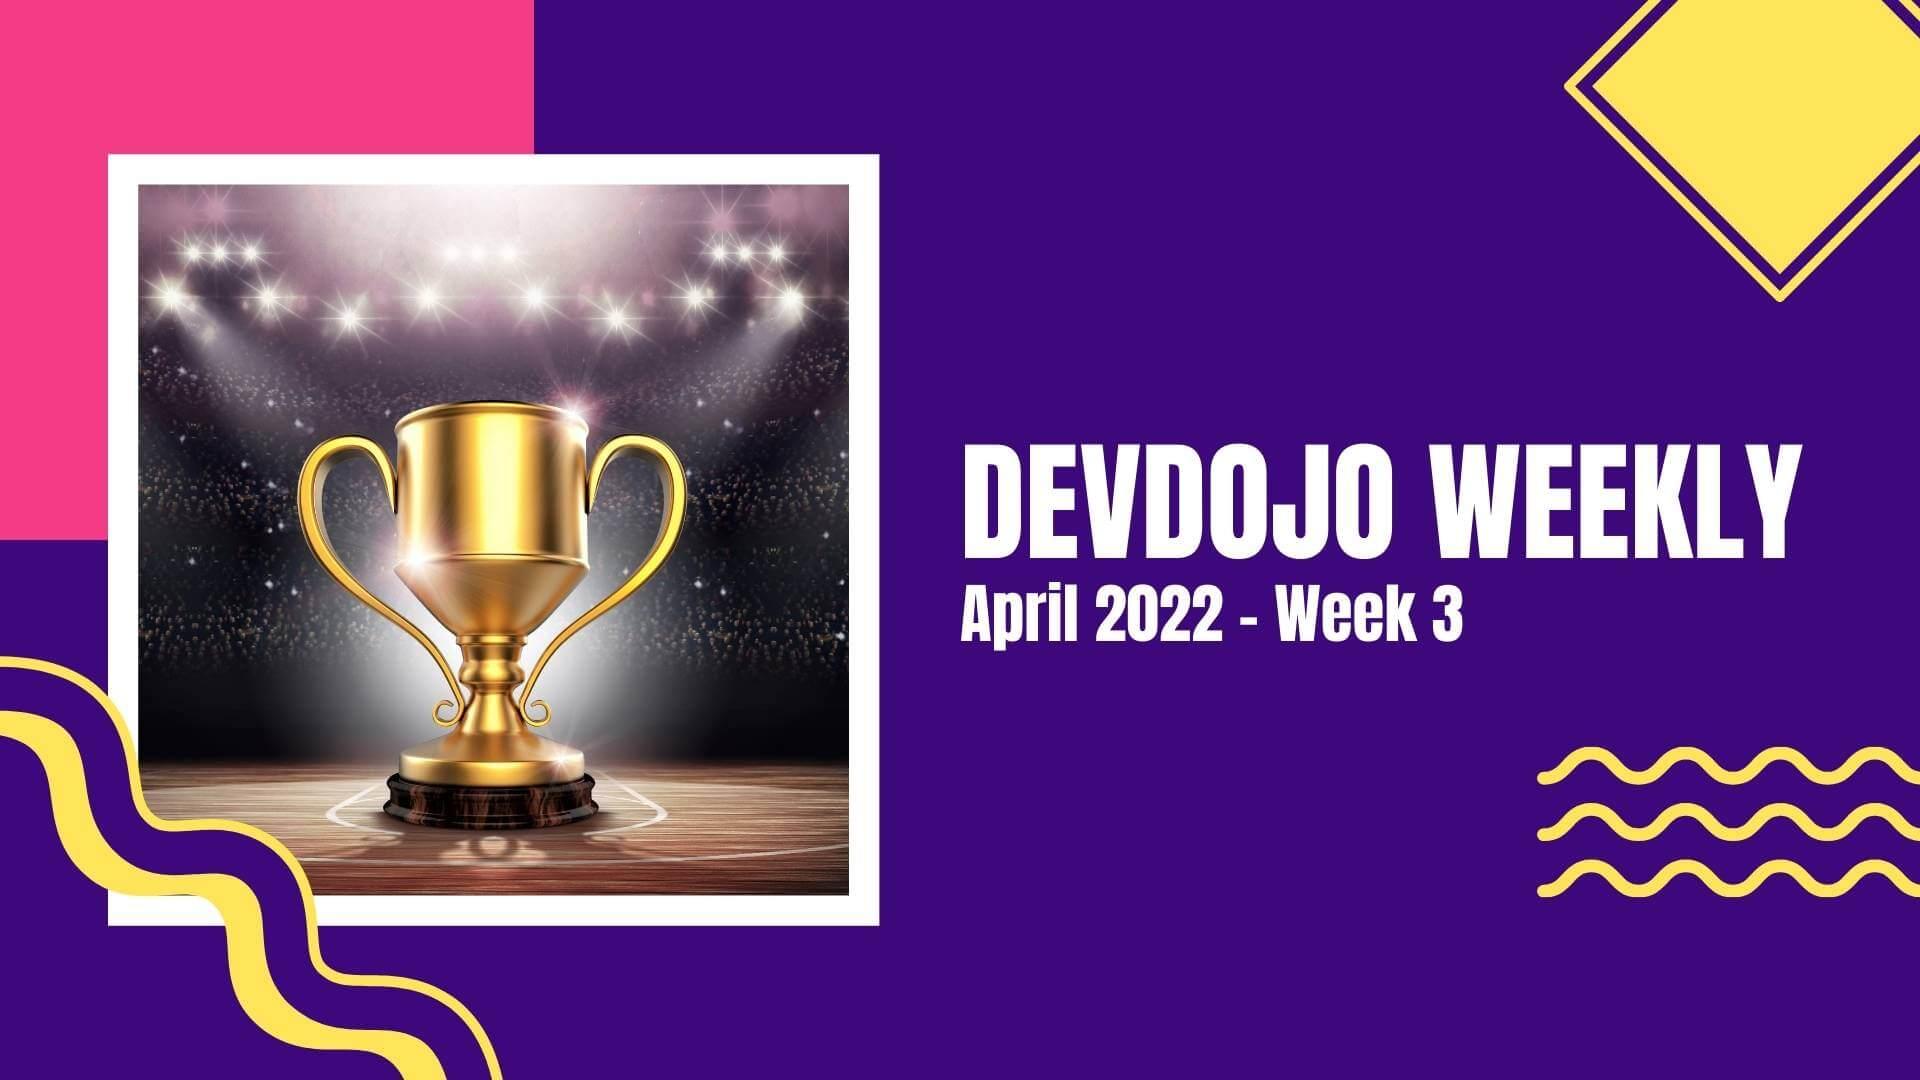 DevDojo Weekly - April 2022 - Week 3